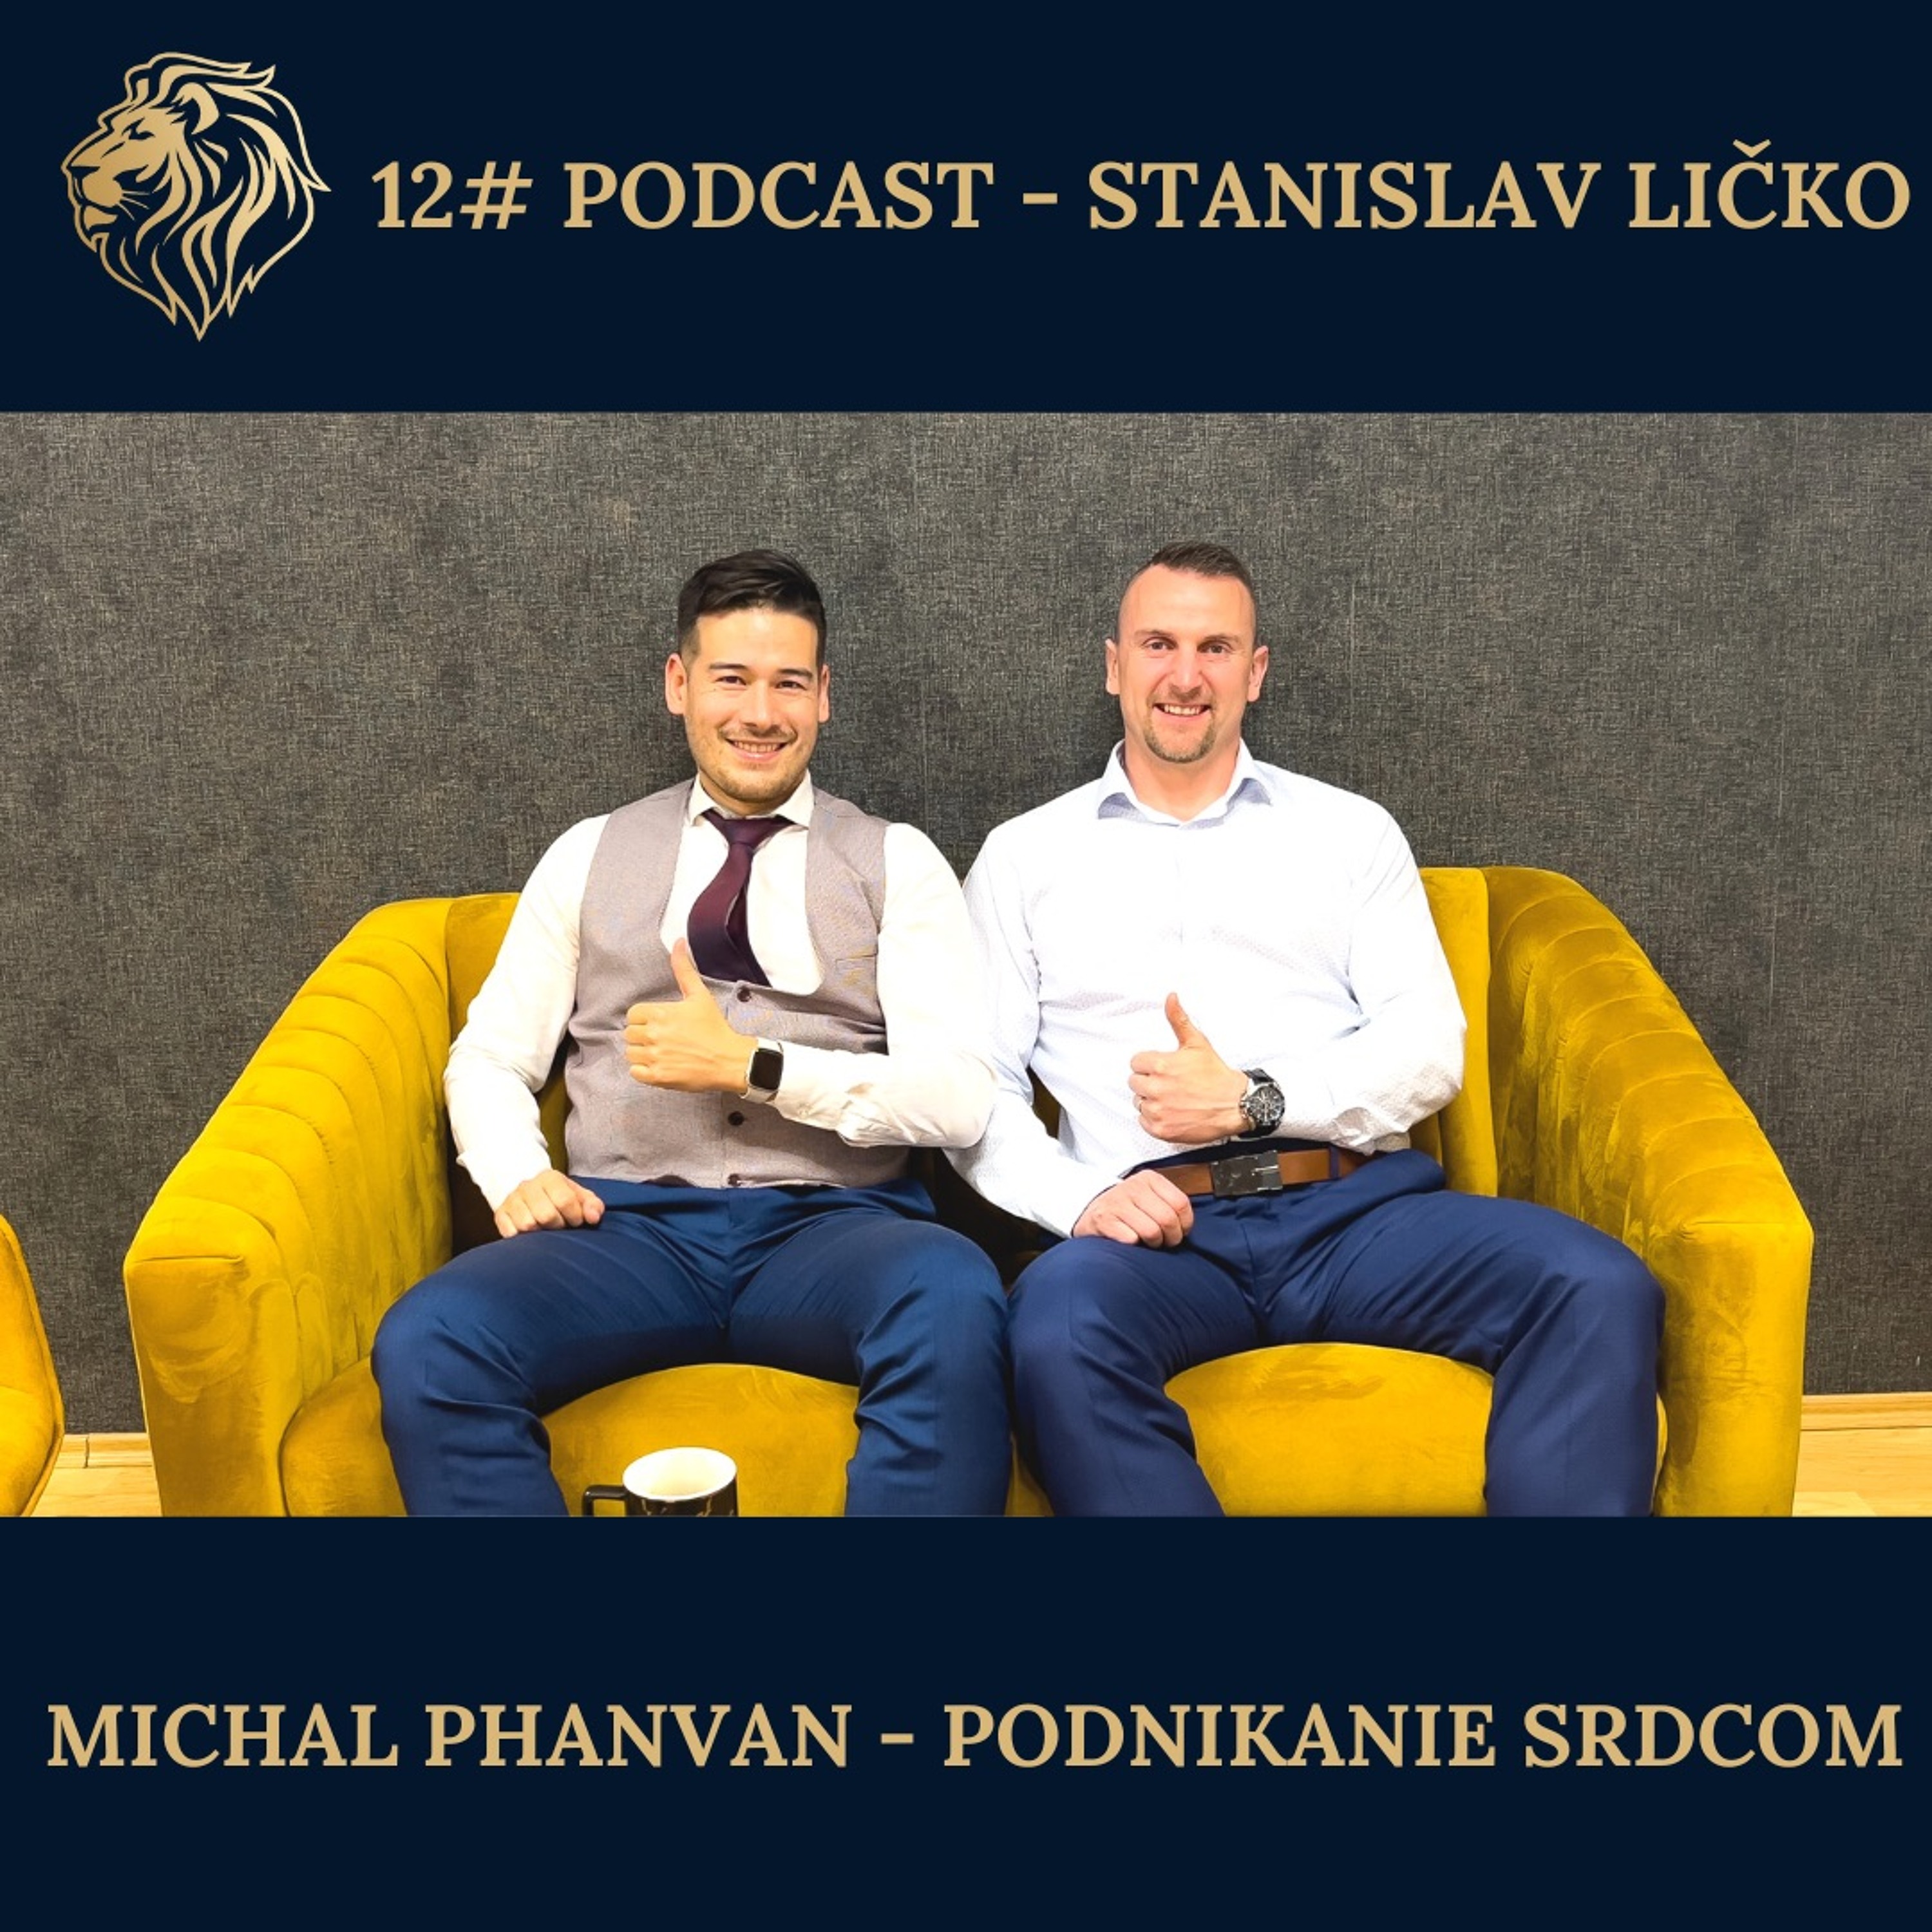 #12 PODCAST - Michal Phanvan - Podnikanie srdcom